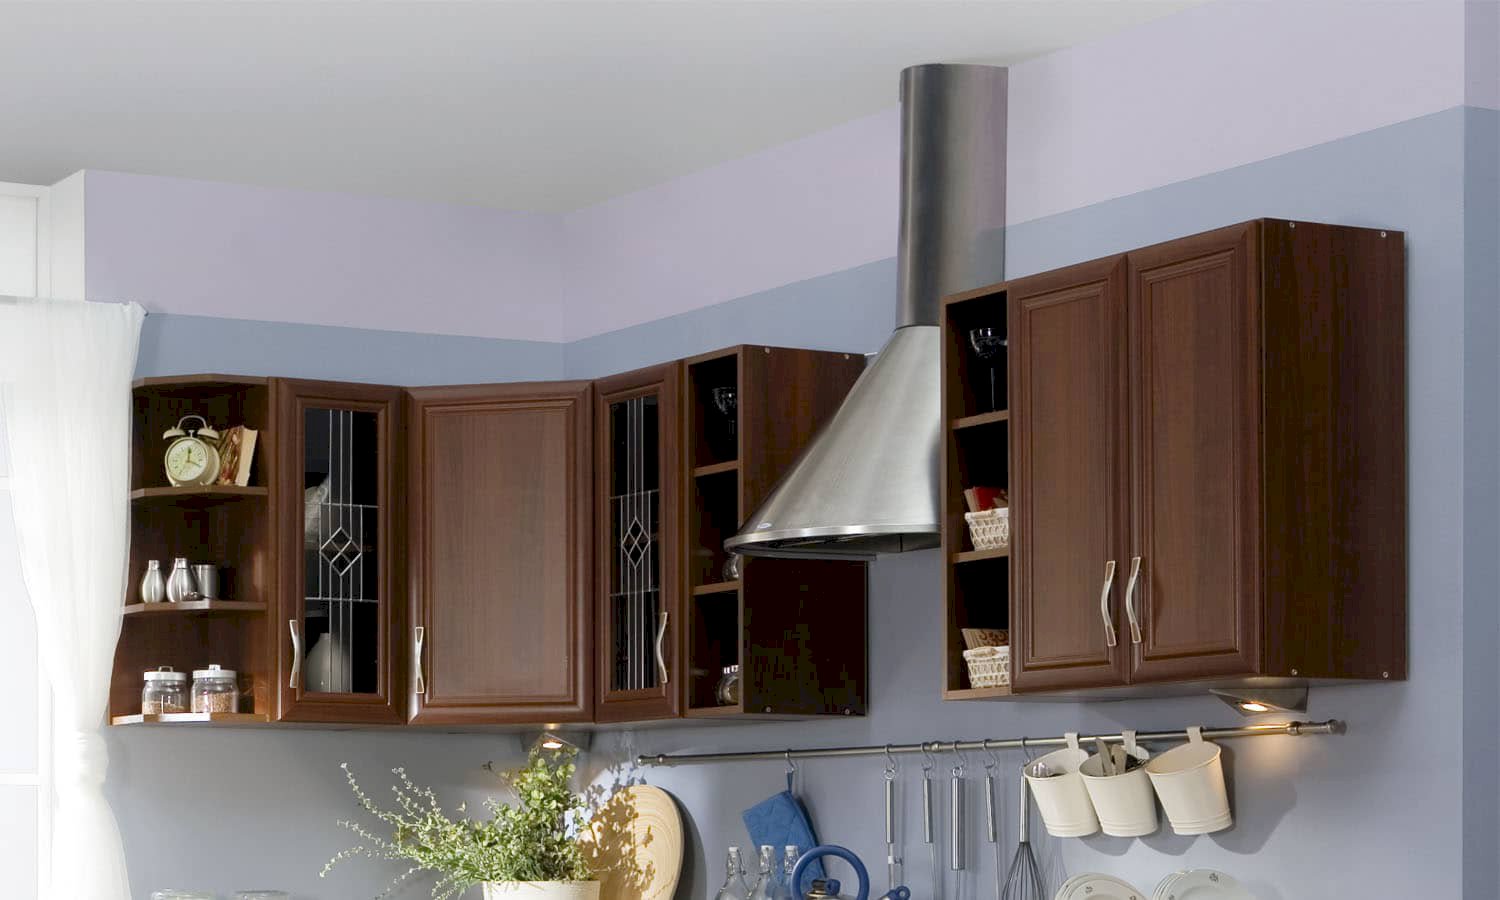 Jaki kolor ścian do brązowych mebli w kuchni wybrać?